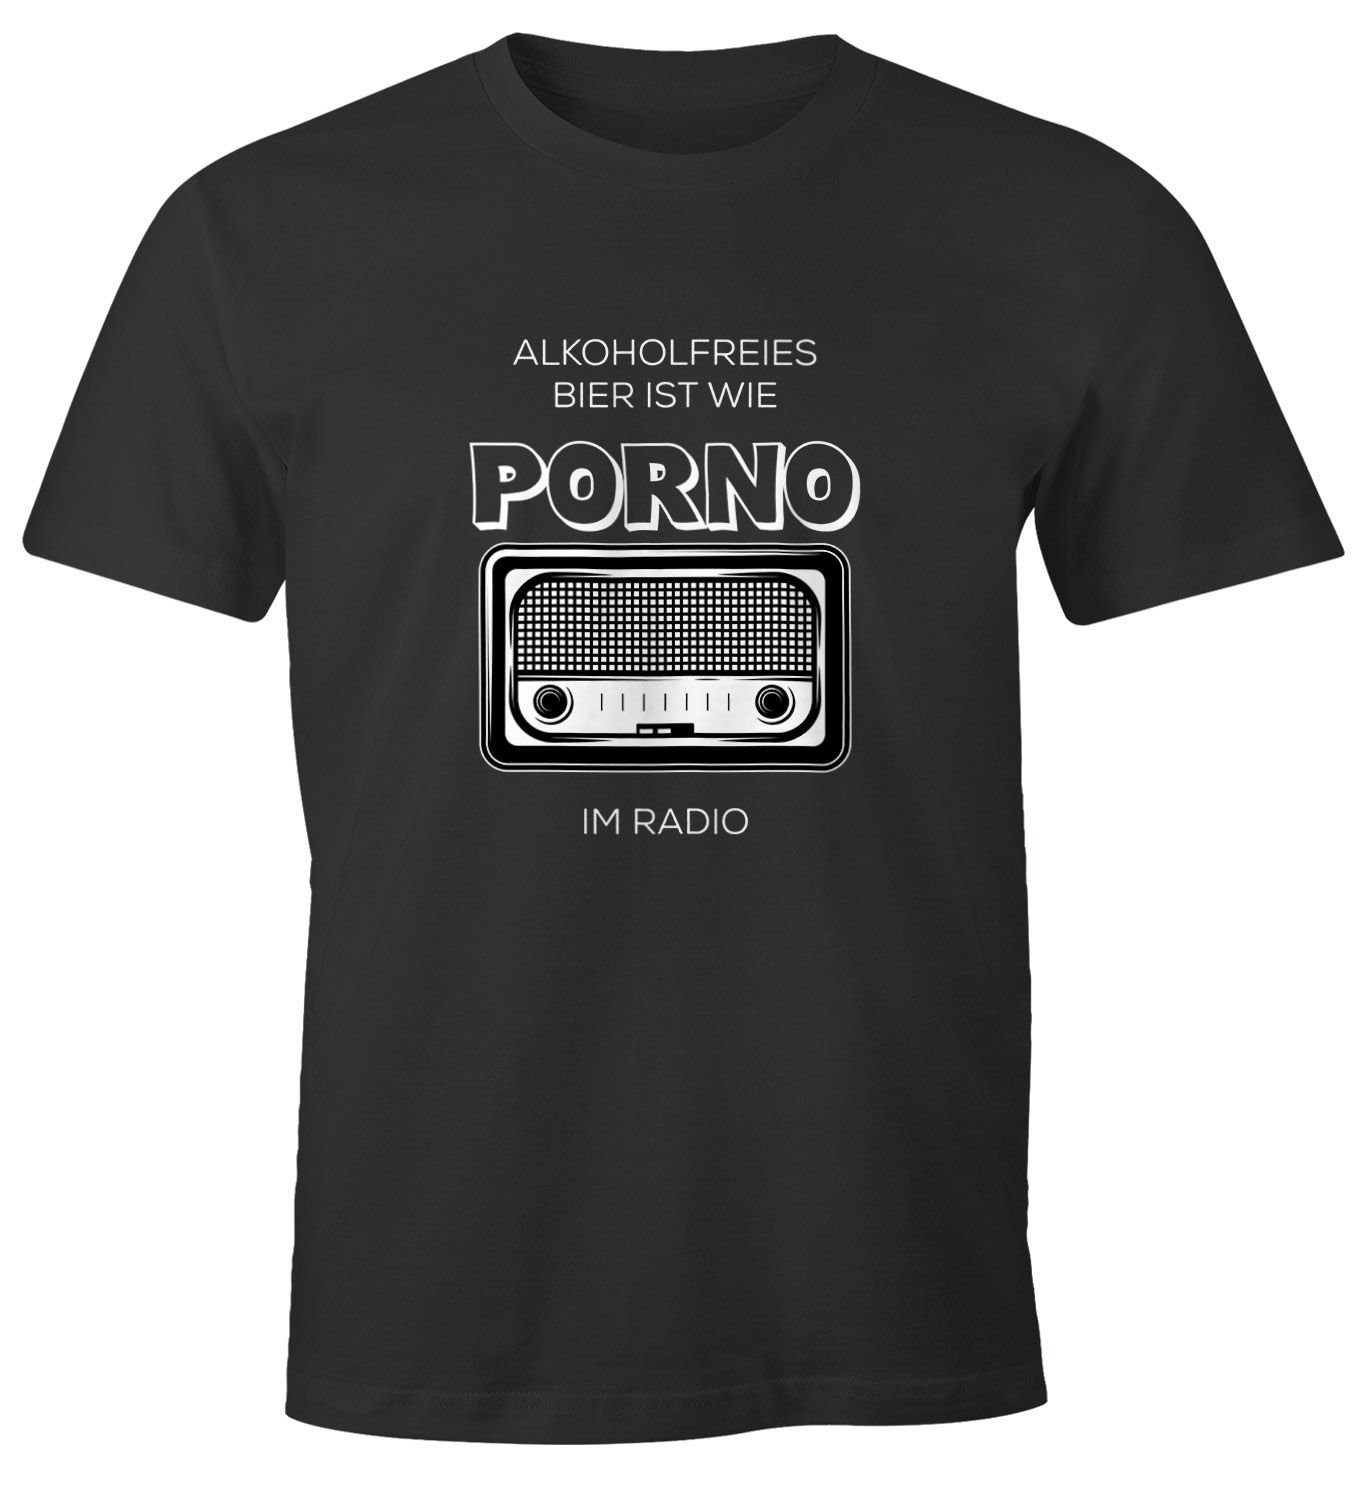 Radio im Bier T-Shirt Fun-Shirt Print wie mit Bier-Shirt Herren ist Moonworks® Alkoholfreies MoonWorks Spruch Print-Shirt Porno feiern Party